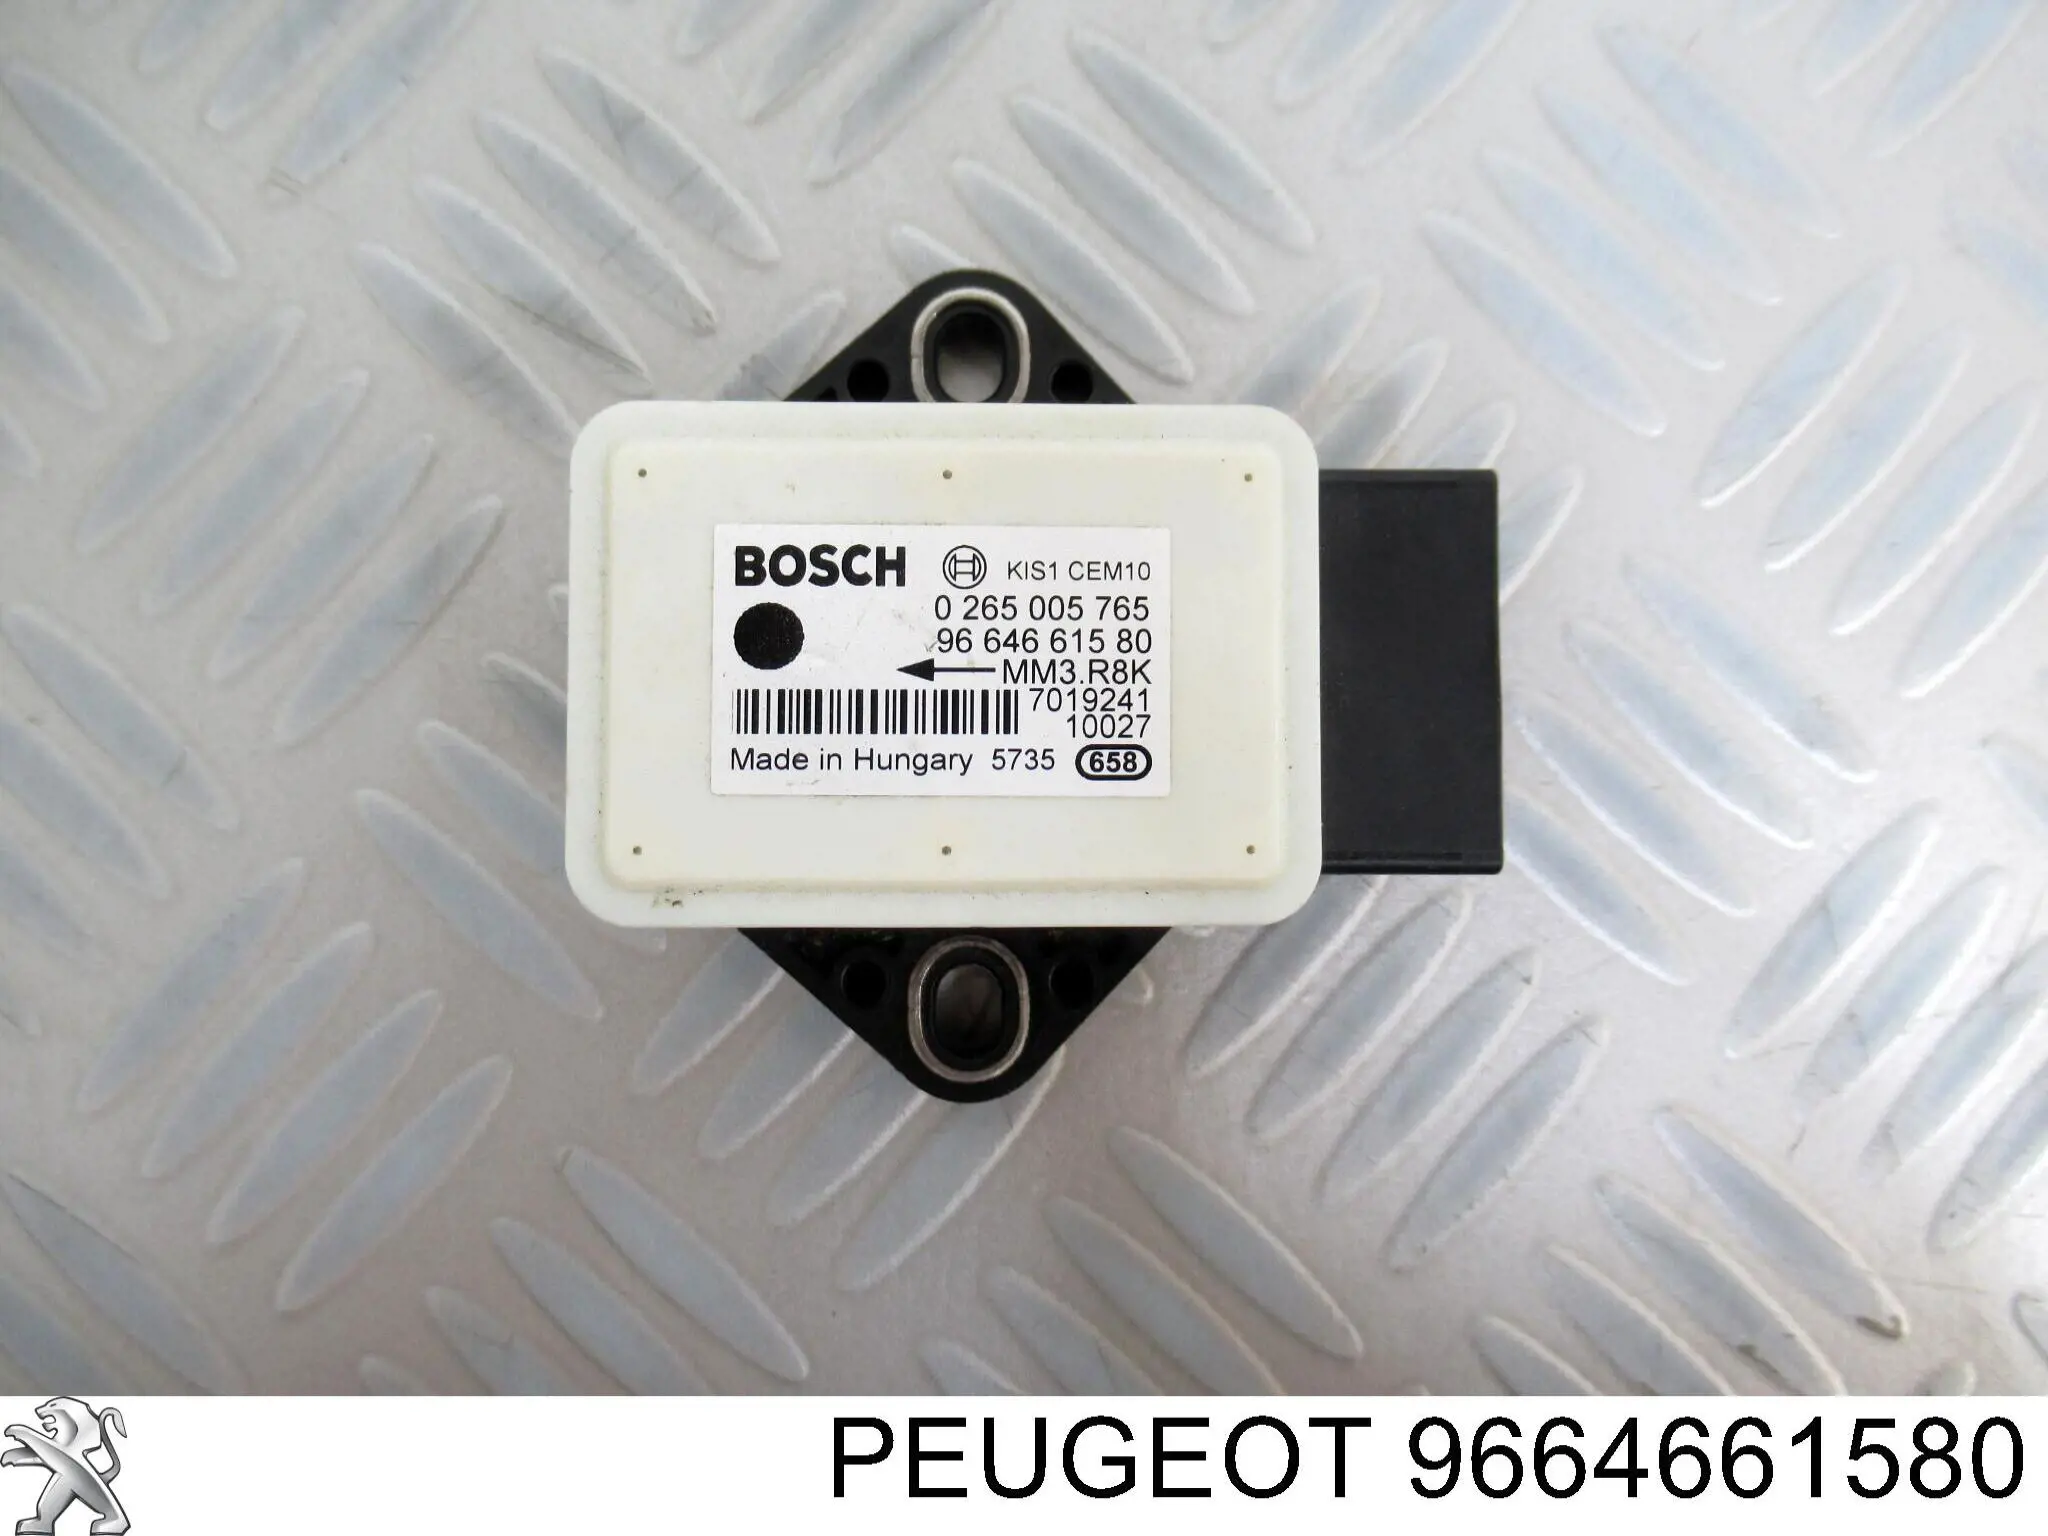 9664661580 Peugeot/Citroen sensor de aceleracion lateral (esp)